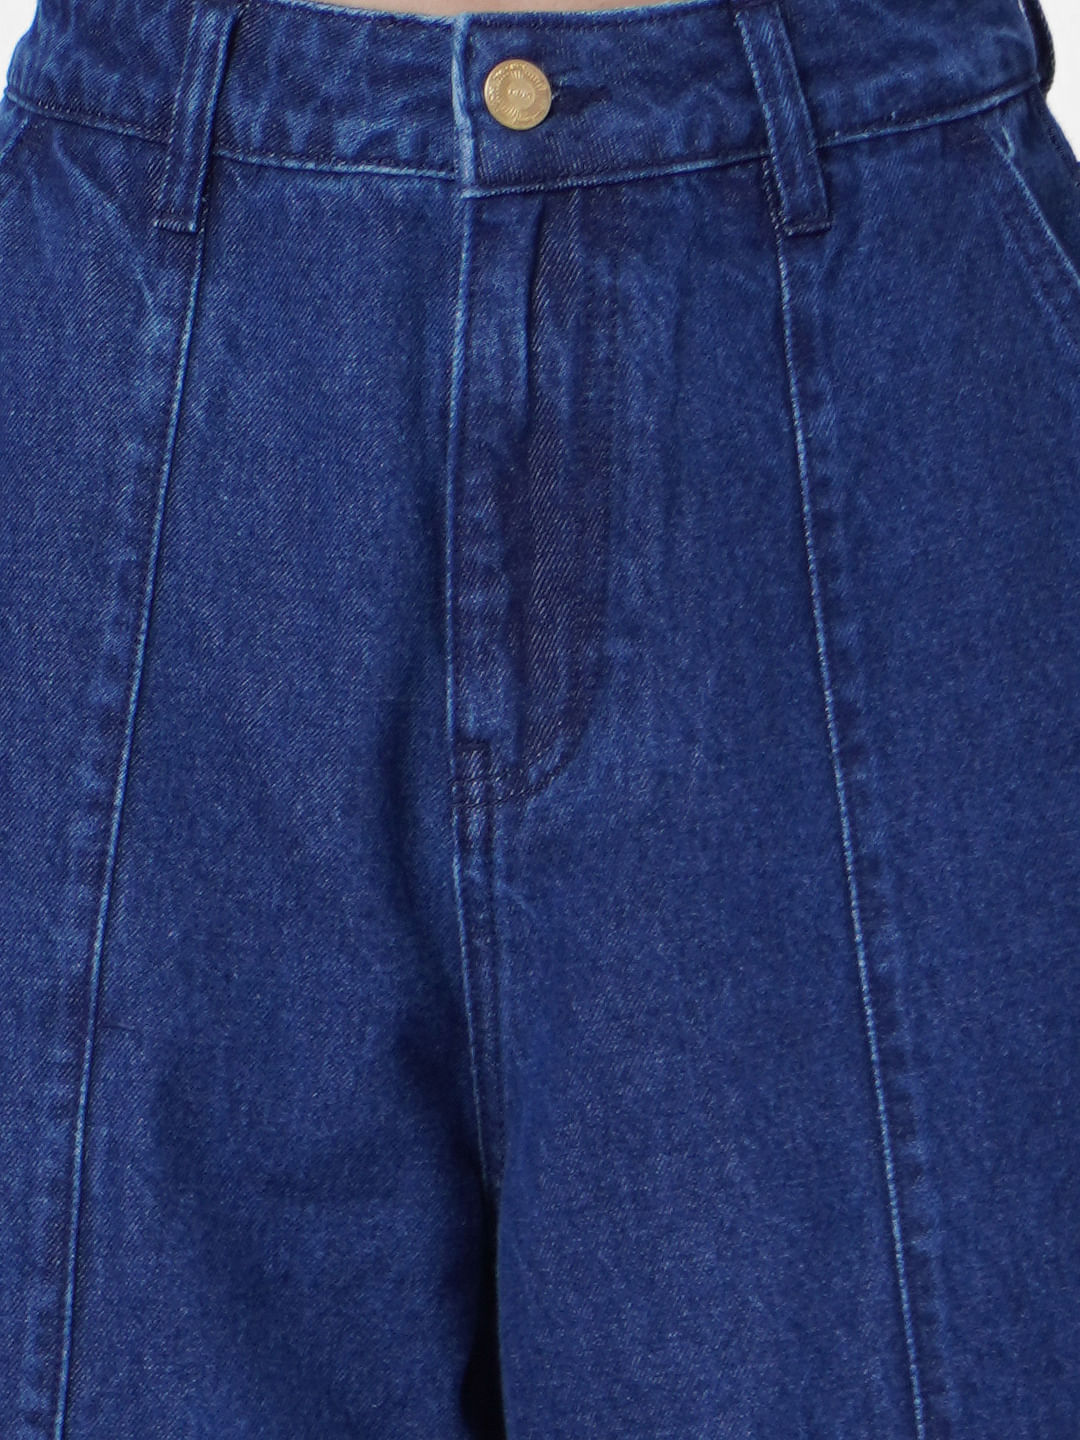 pjc culture Slim Men Light Blue Jeans - Buy pjc culture Slim Men Light Blue  Jeans Online at Best Prices in India | Flipkart.com